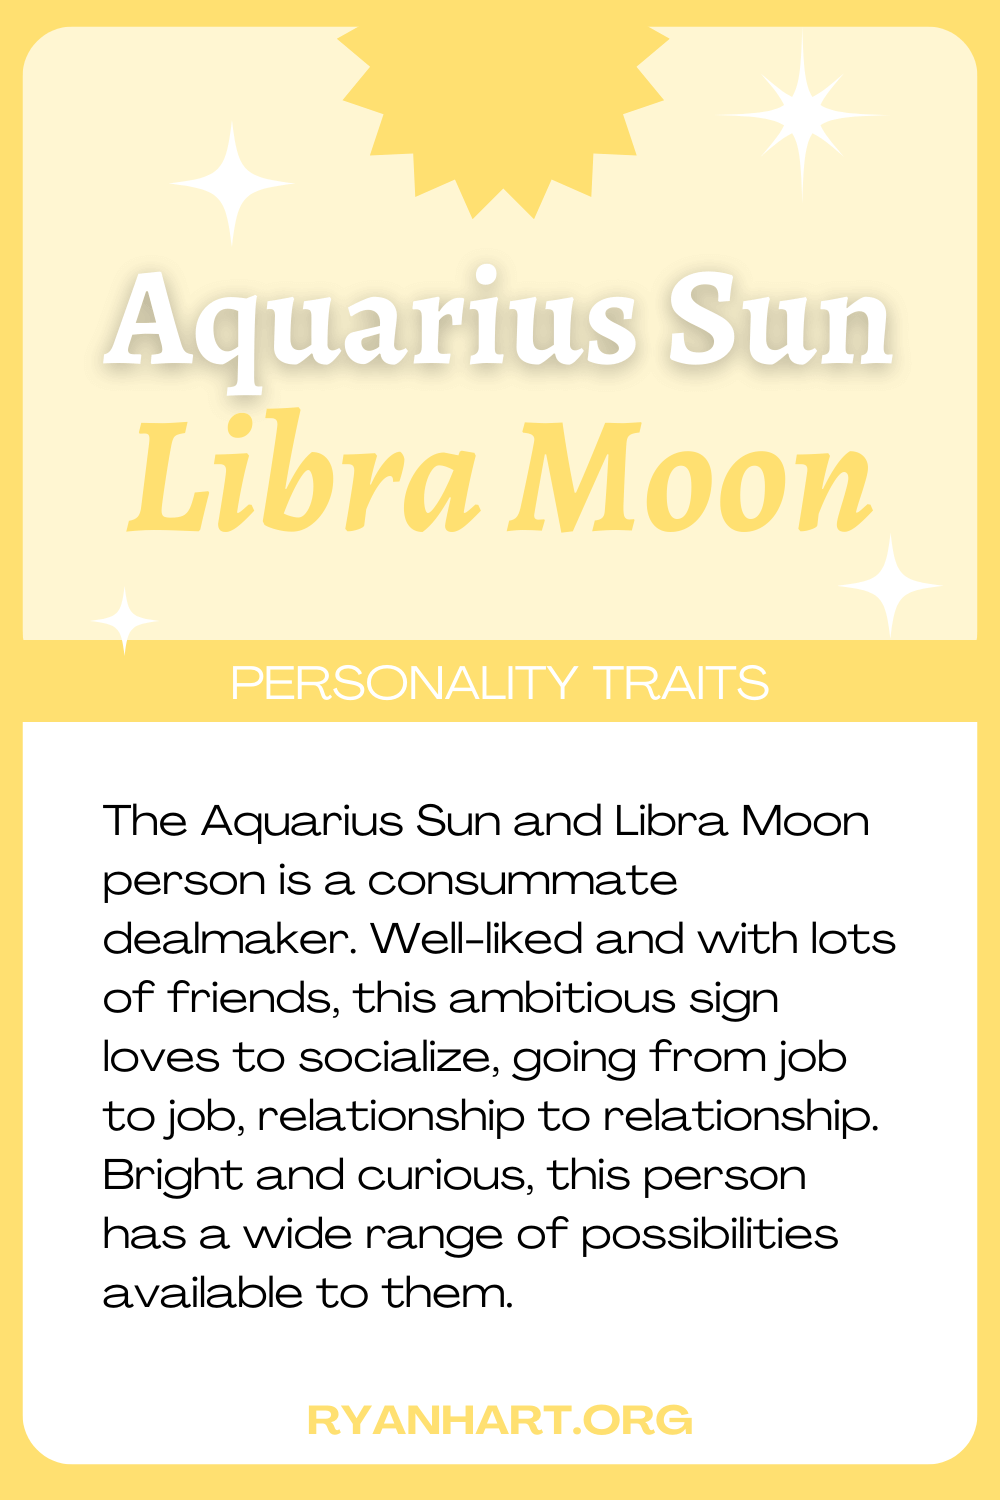  Ciri-ciri Personaliti Aquarius Sun Libra Moon